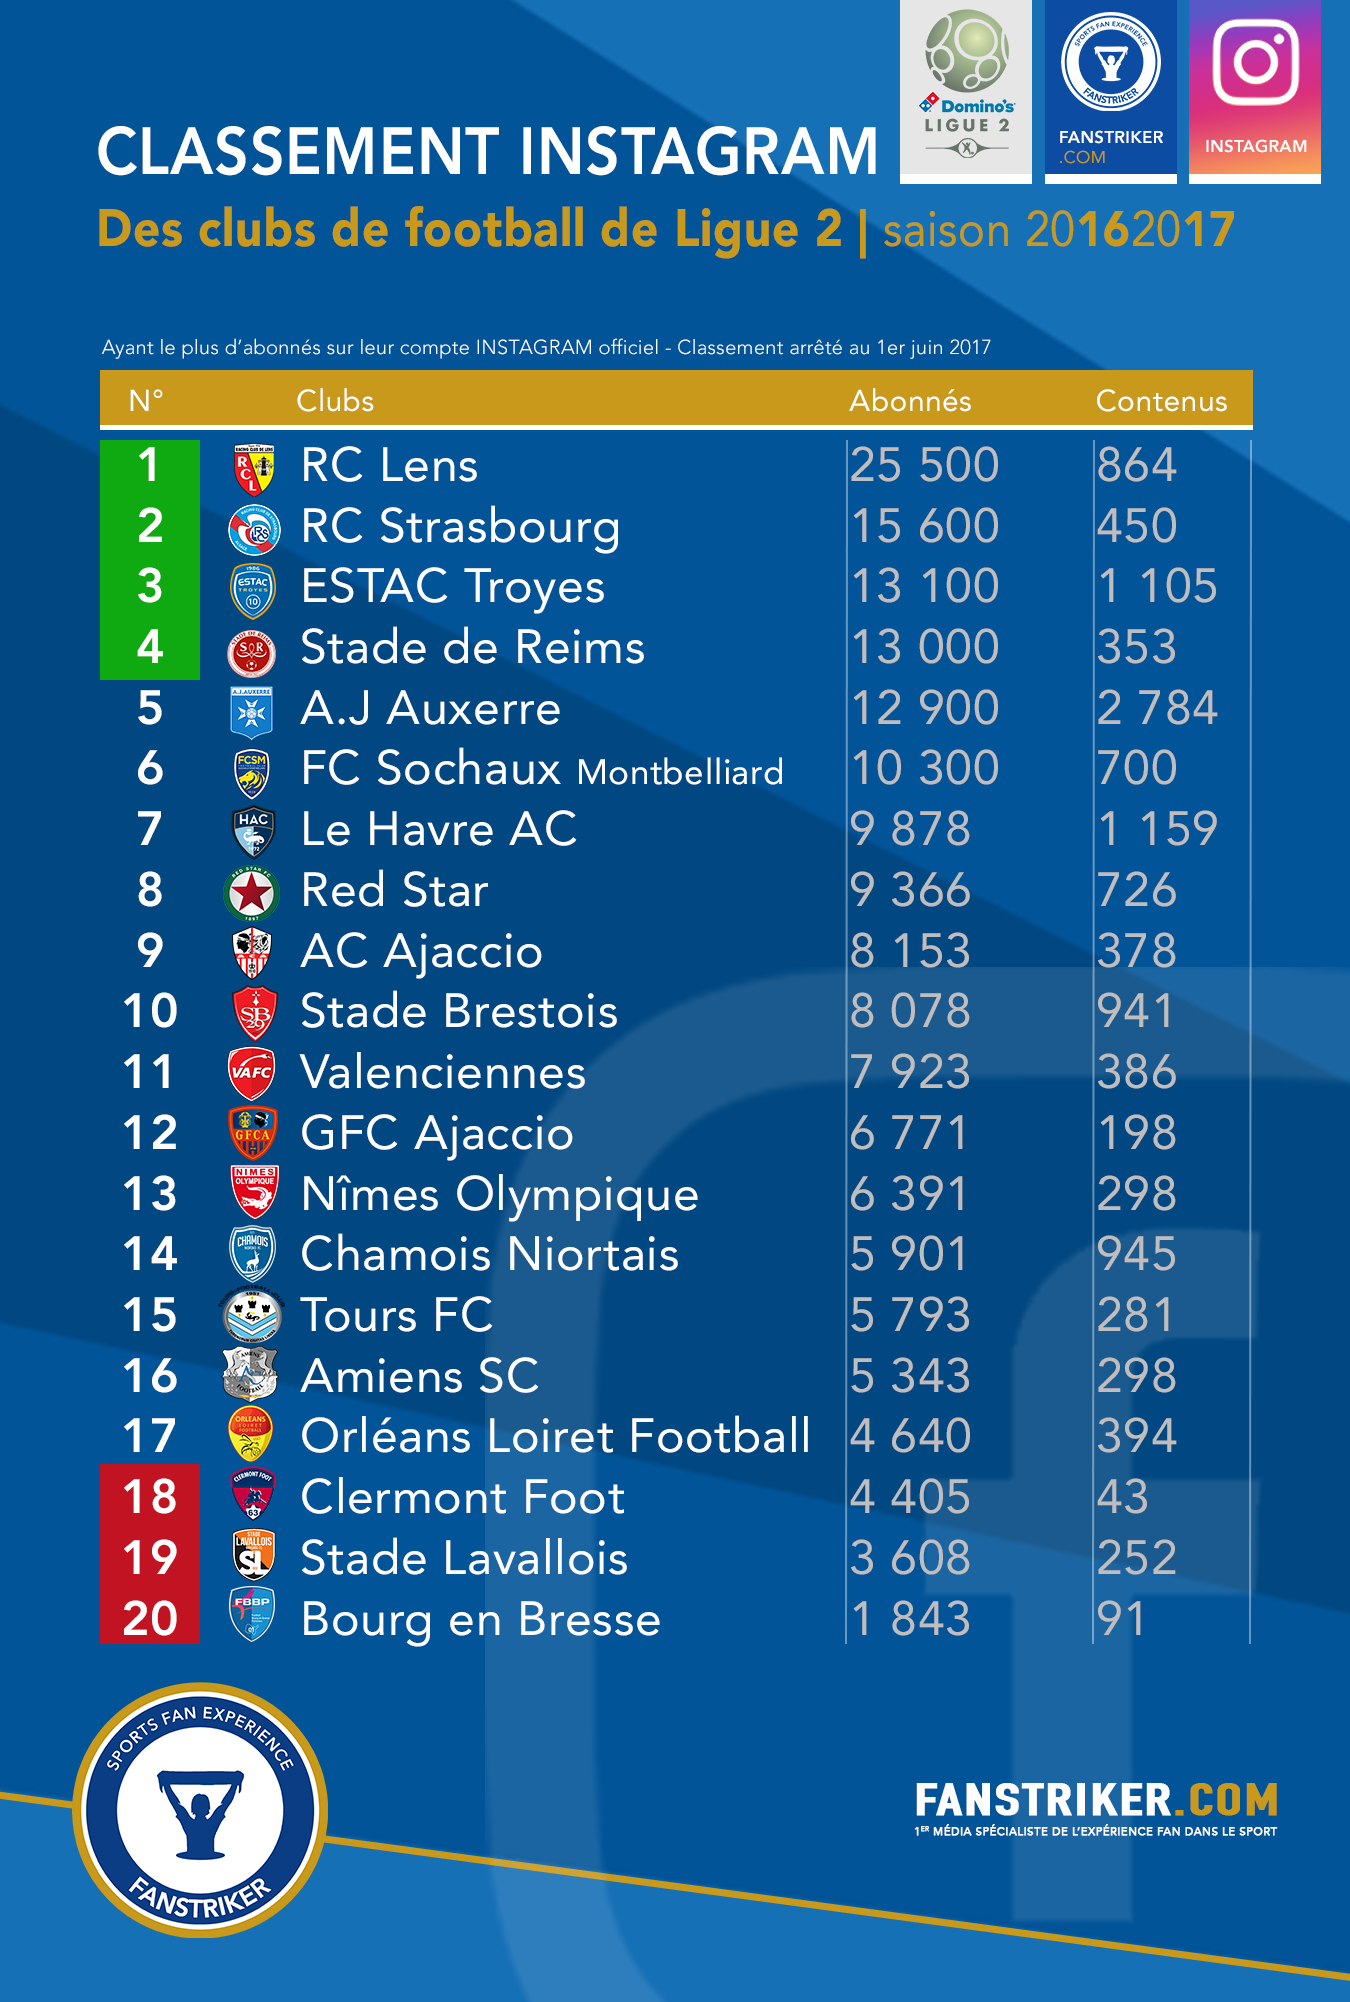 Le classement Instagram des clubs de Ligue 2